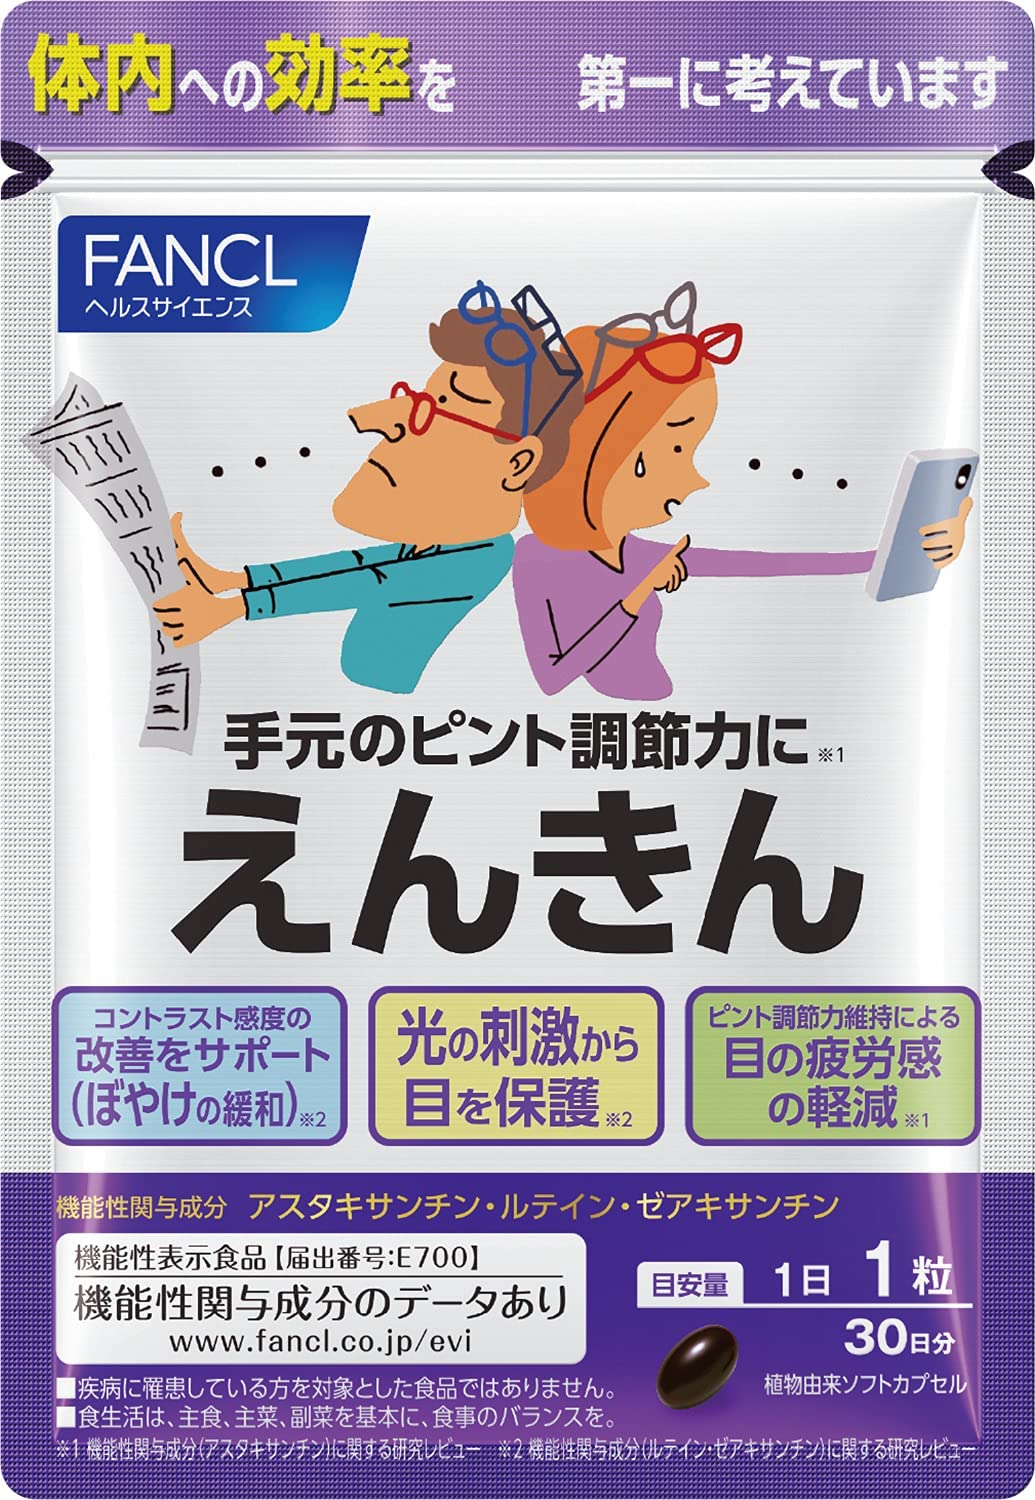 FANCL(ファンケル) | ドコデモ